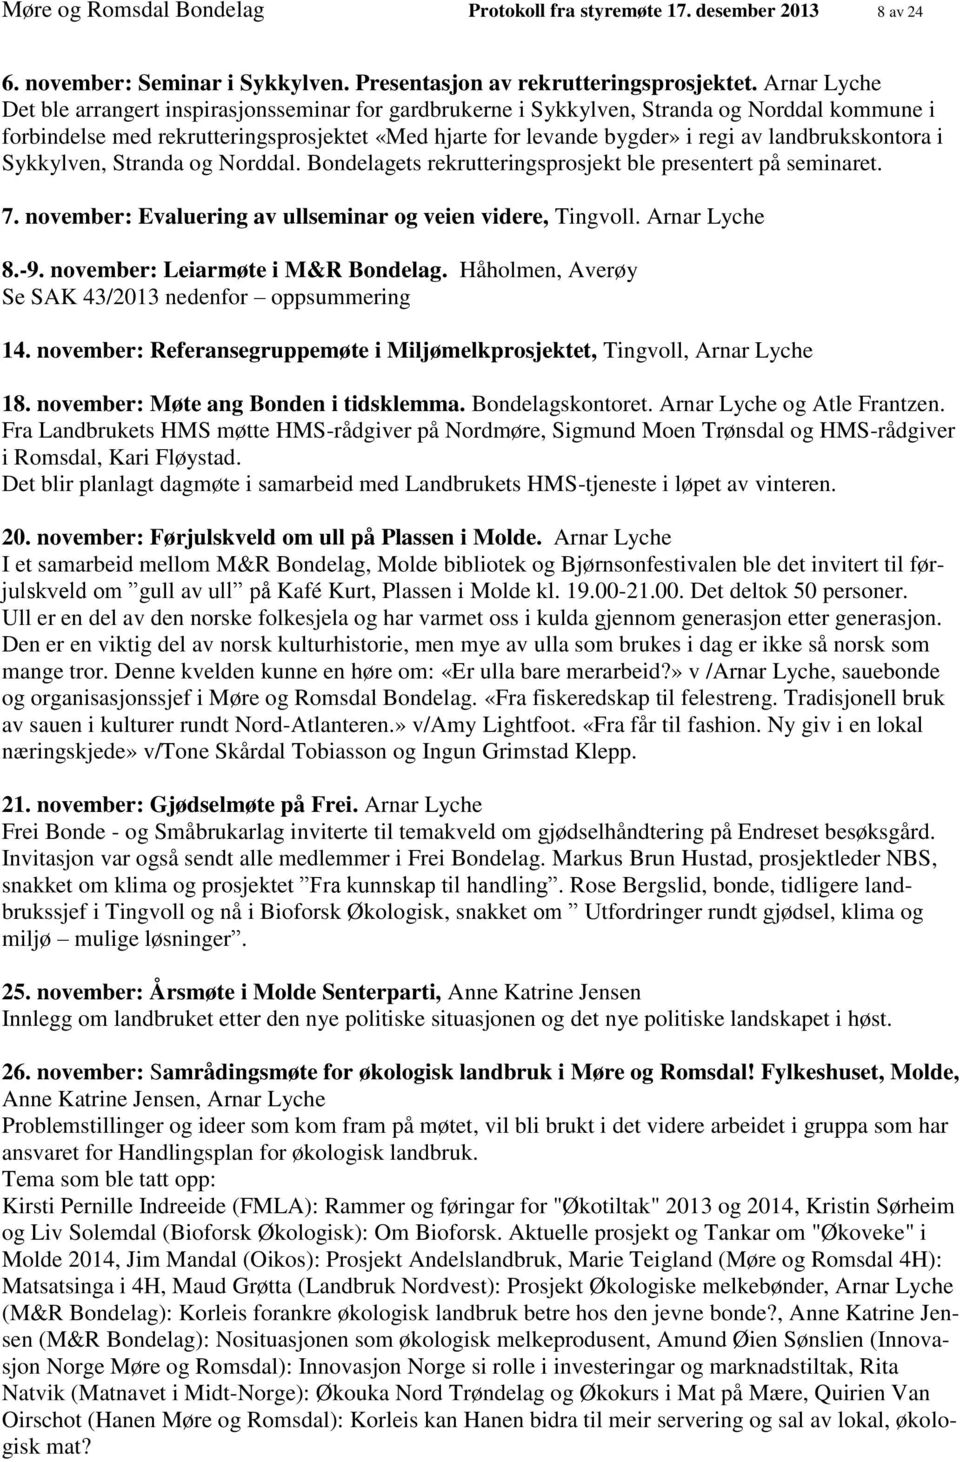 landbrukskontora i Sykkylven, Stranda og Norddal. Bondelagets rekrutteringsprosjekt ble presentert på seminaret. 7. november: Evaluering av ullseminar og veien videre, Tingvoll. Arnar Lyche 8.-9.